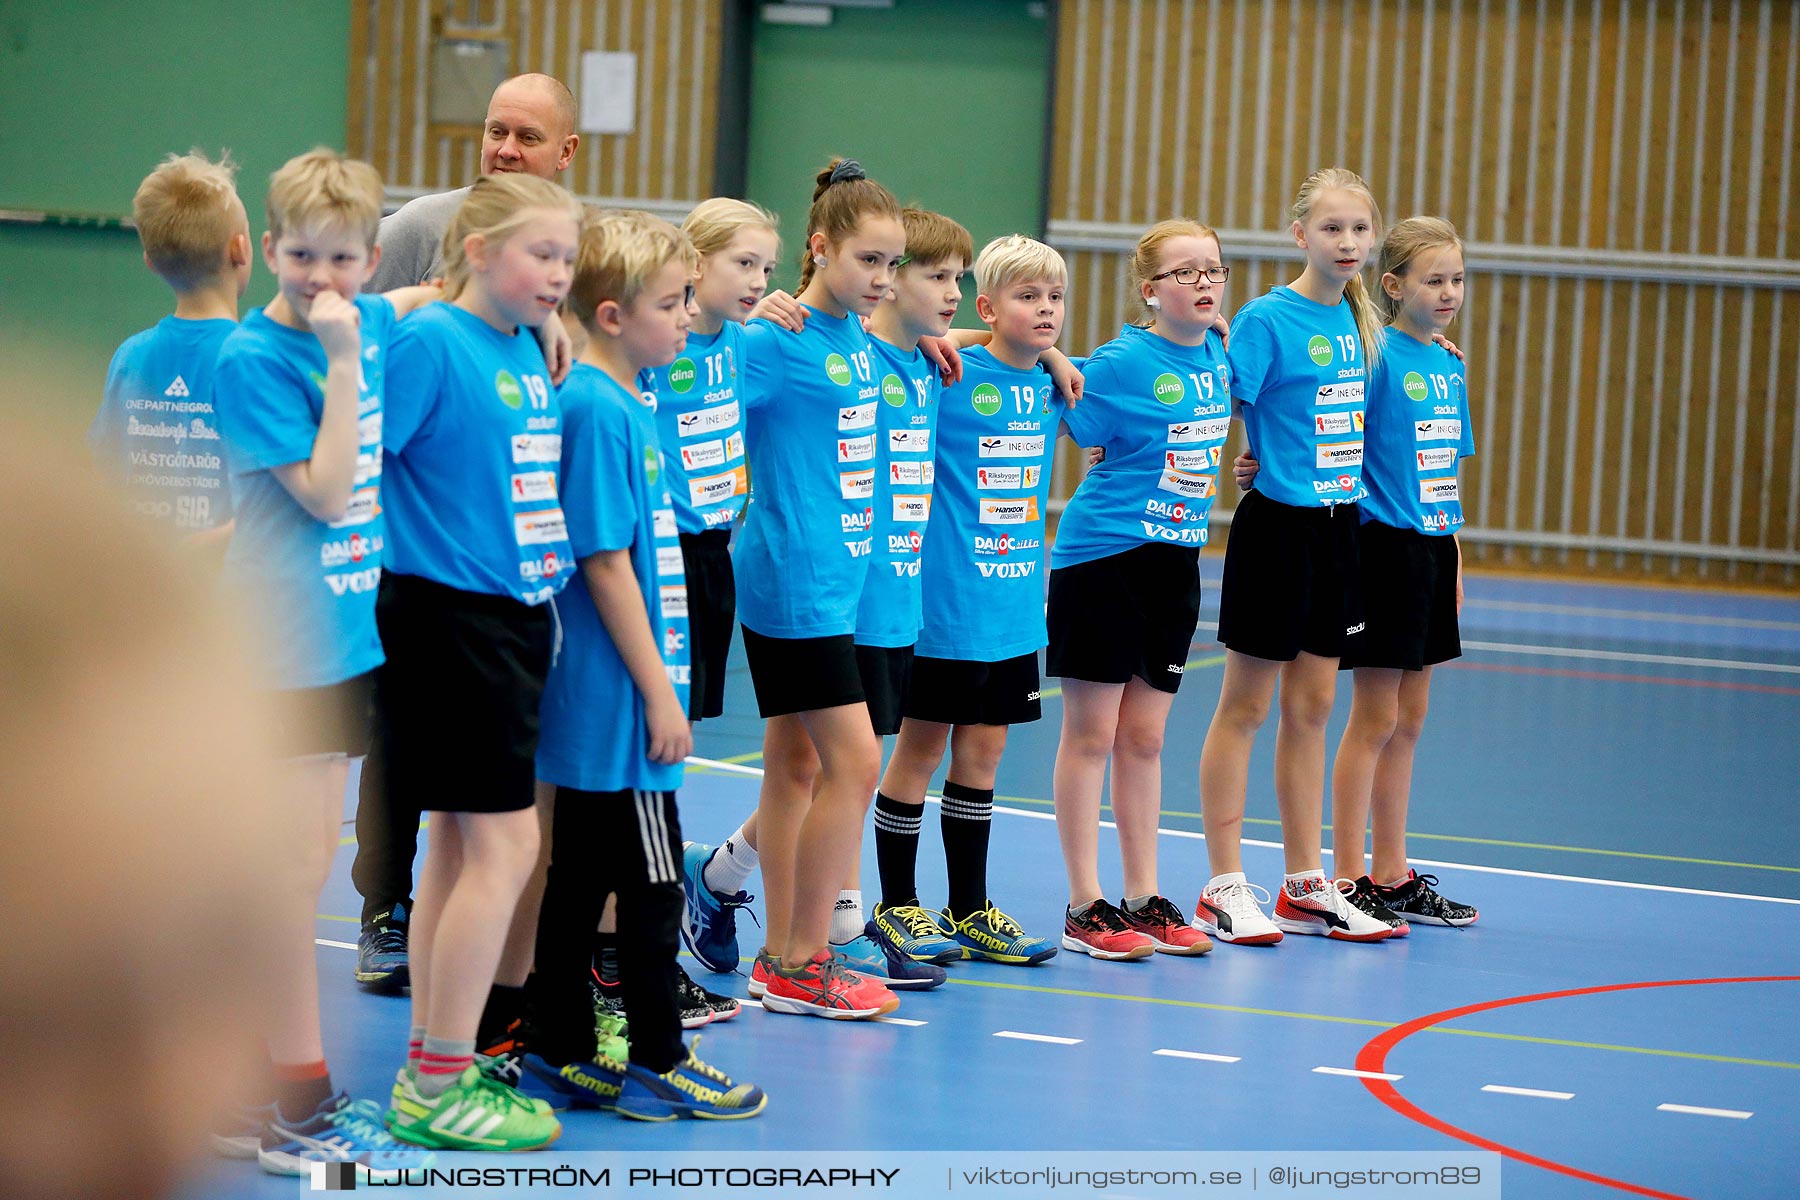 Klasshandboll Skövde 2019 Åldersklass 2008,mix,Arena Skövde,Skövde,Sverige,Handboll,,2019,211690